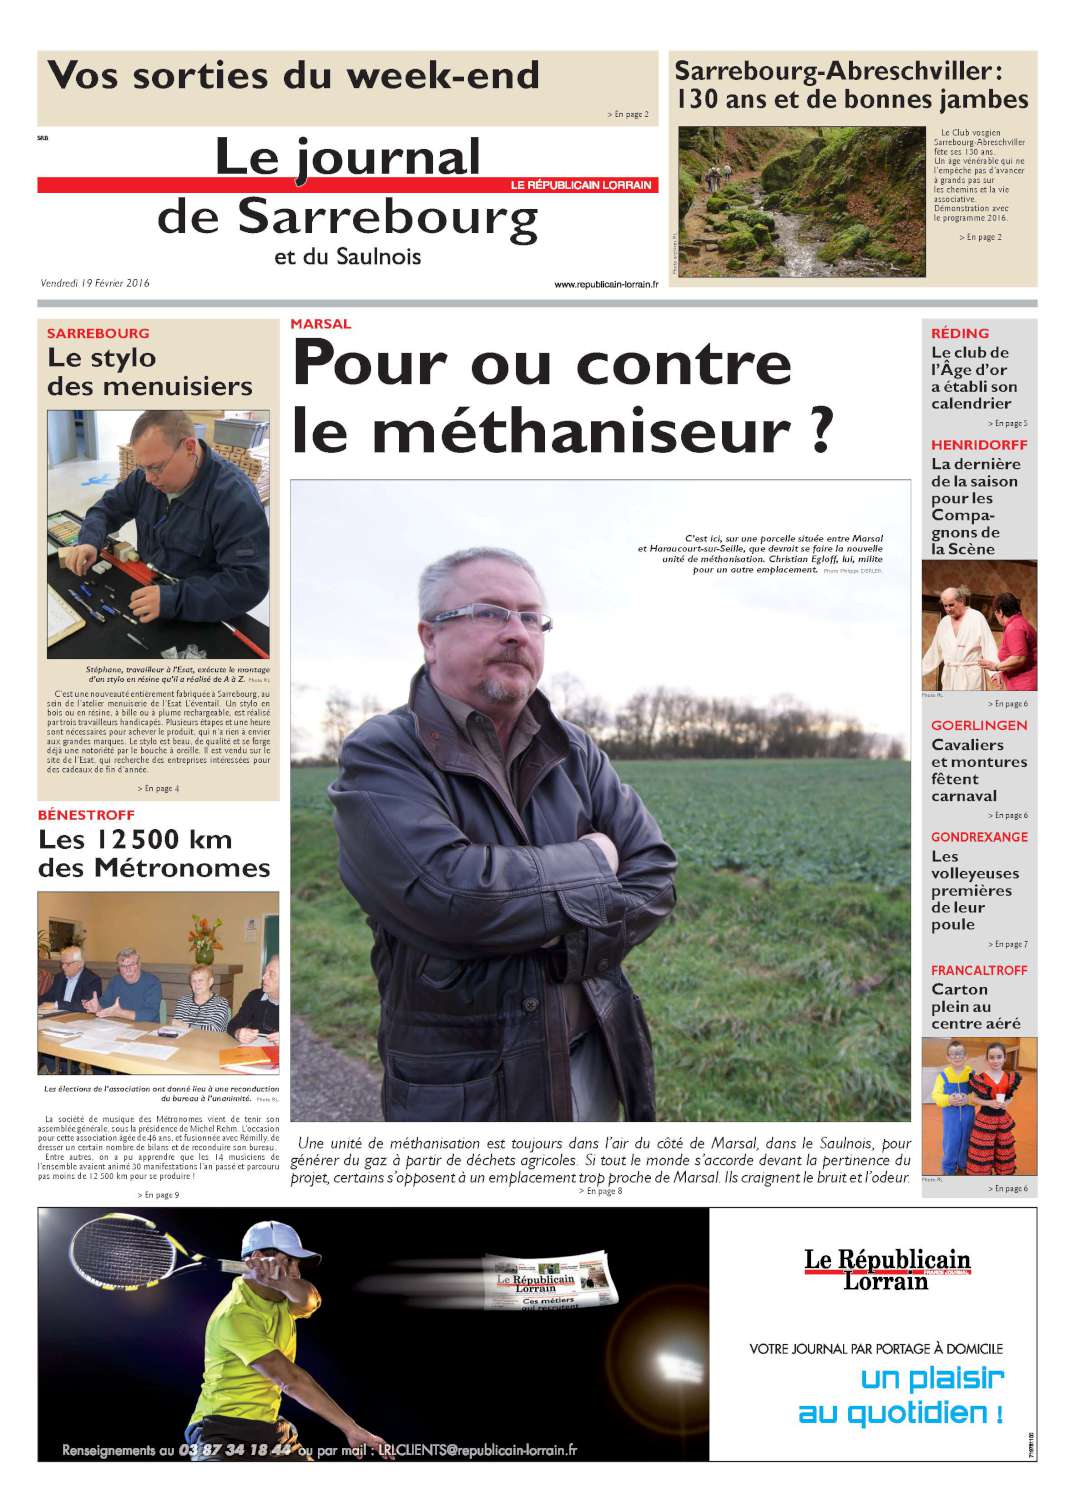 PDF Page 19 edition de sarrebourg 20160219 1500